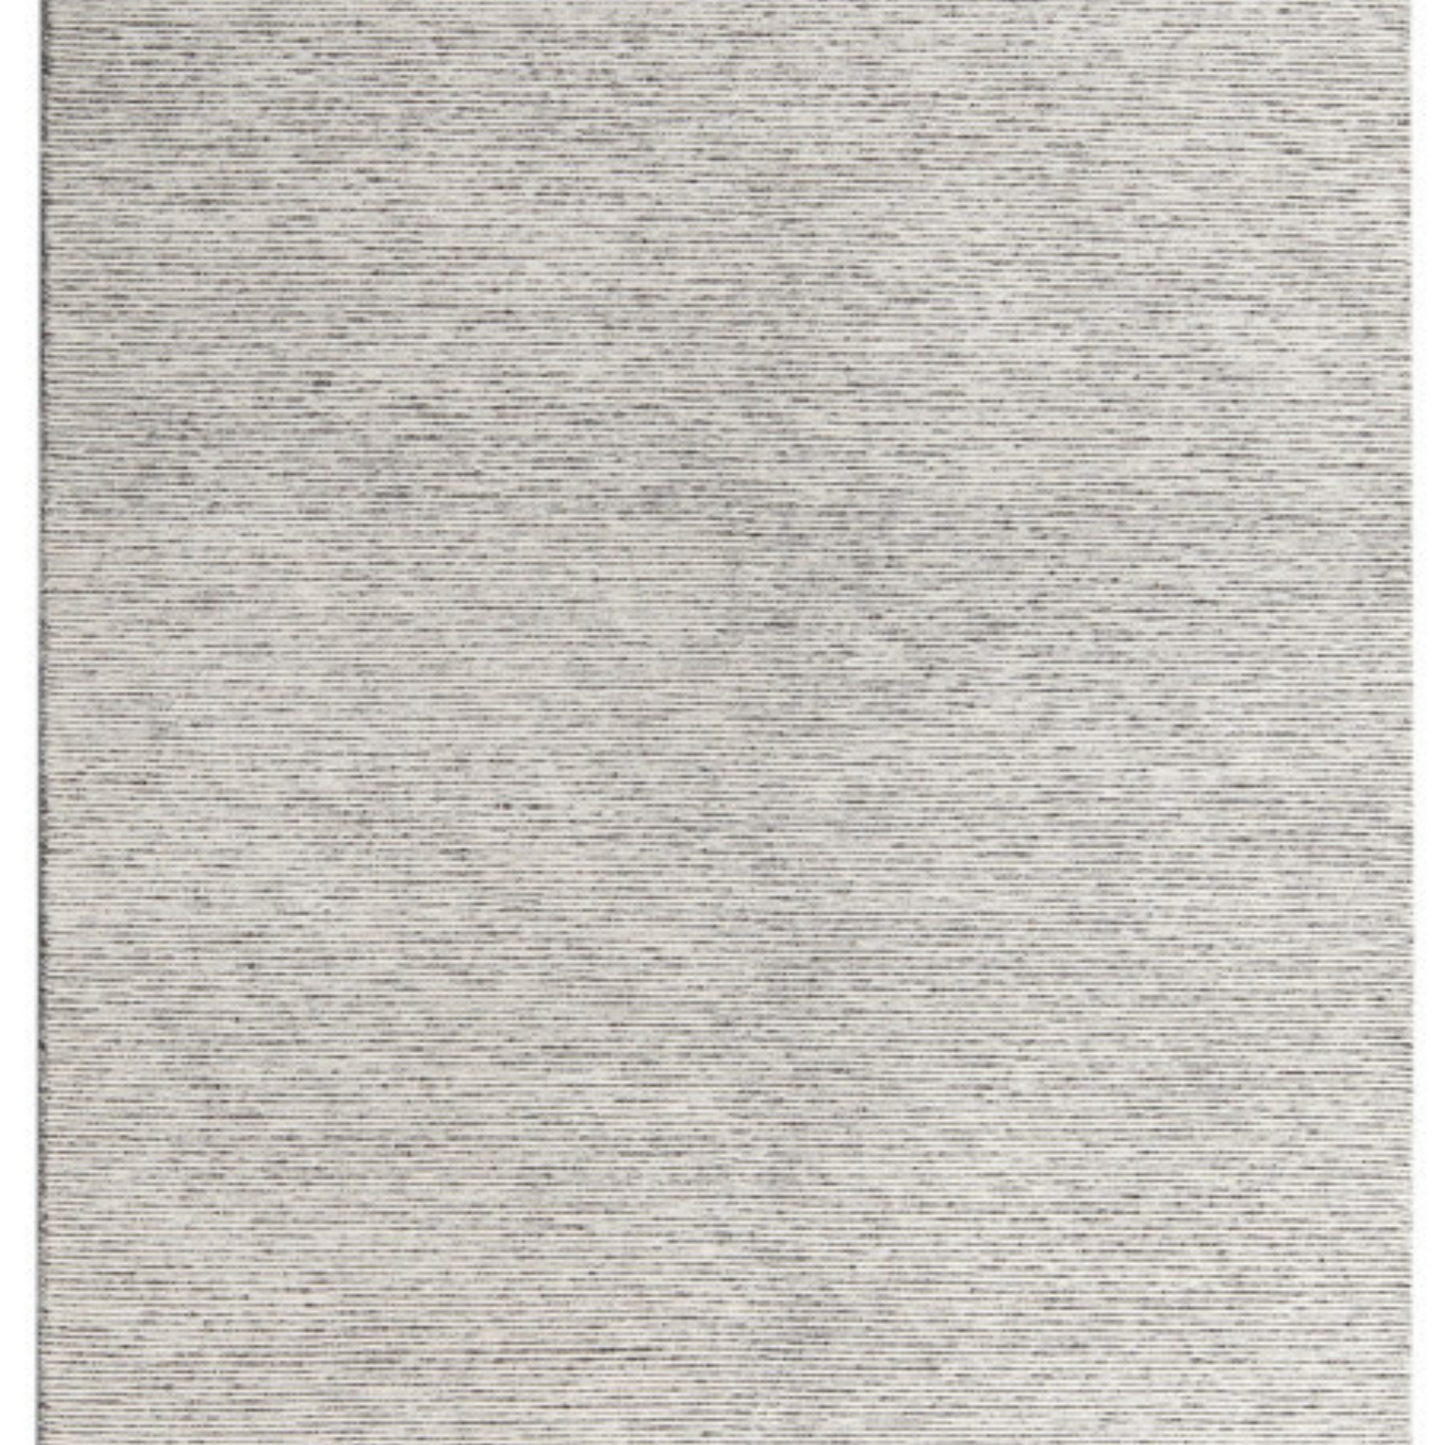 Pandora Rug - Natural Grey 160cm x 230cm